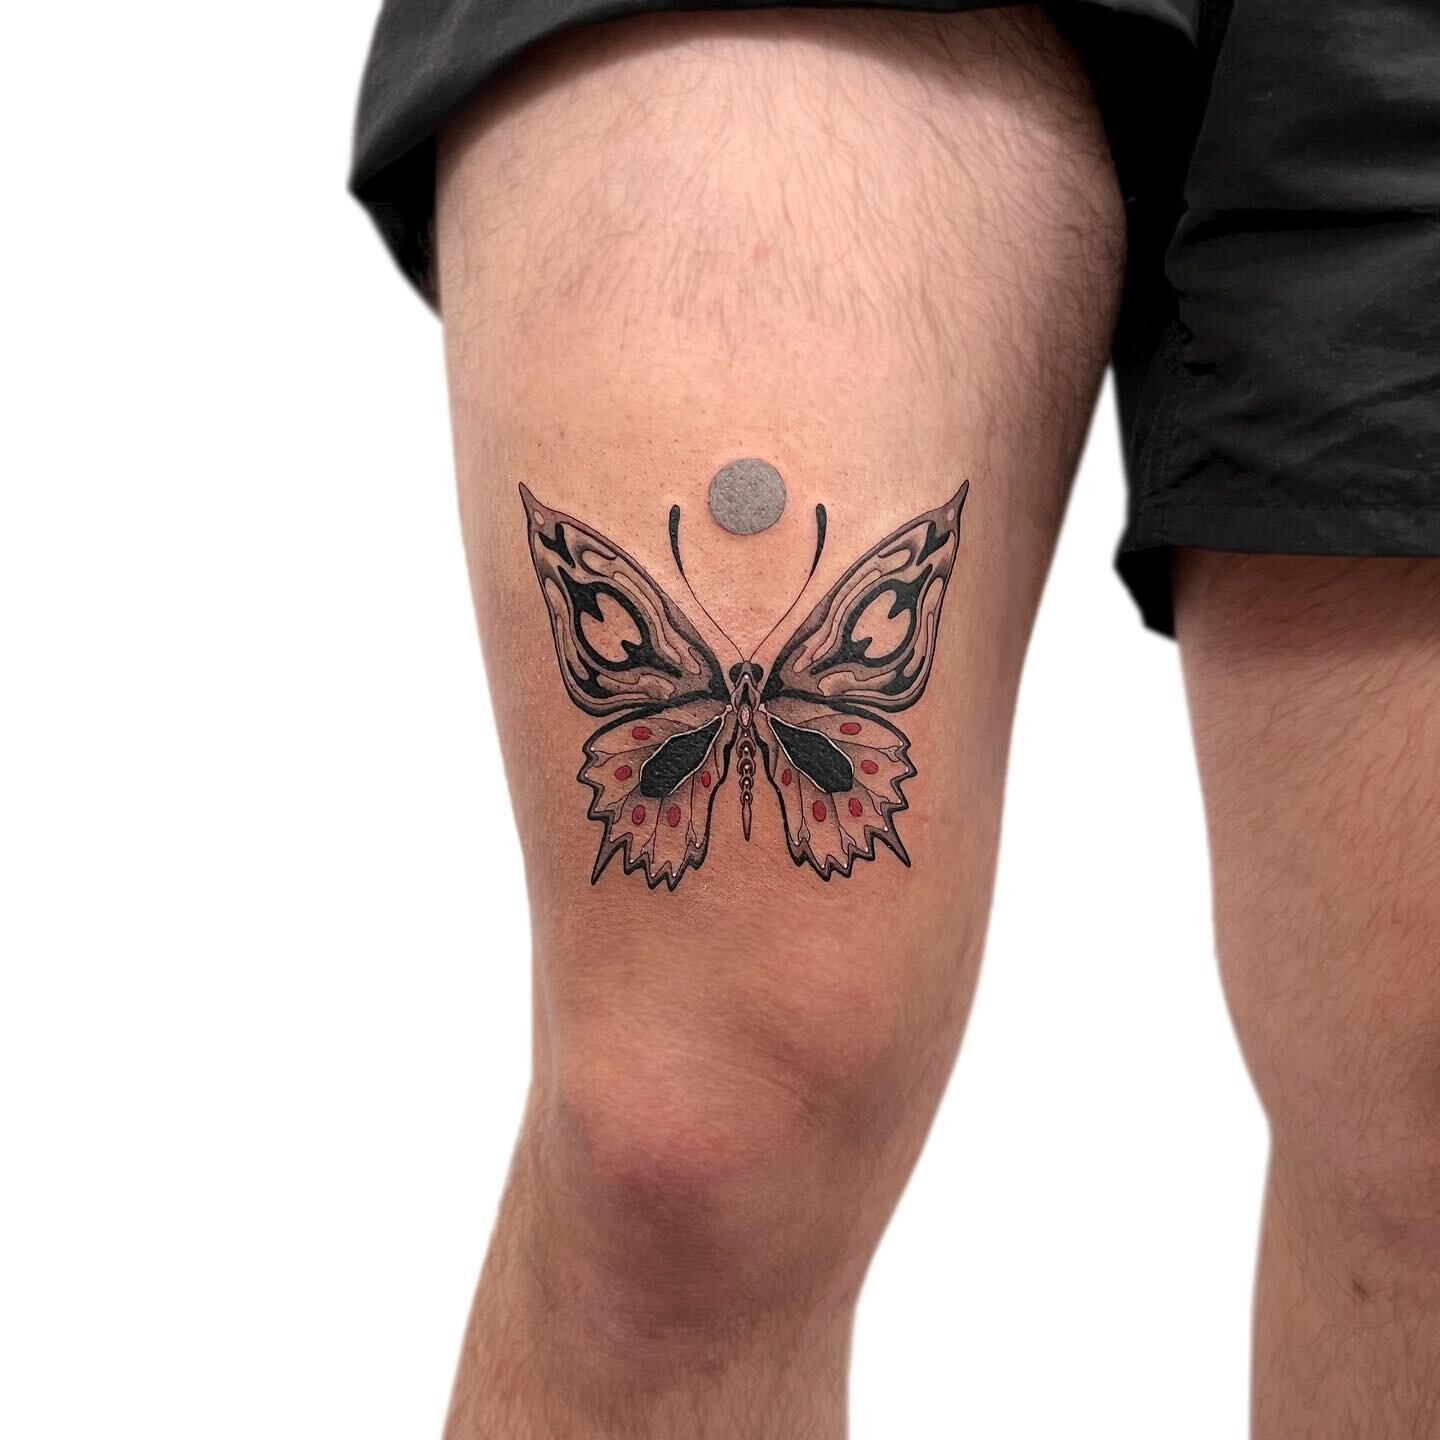 Custom for Jake🦋🦋🦋
Thank you!
.
.
.
.
#tattoo #thightattoo #legtattoo #butterflytattoo #ink #blackwork #blackandredtattoo #trippytattoo #customtattoo #uniquetattoo #art #tattooist #torontotattoo #tattoostyle